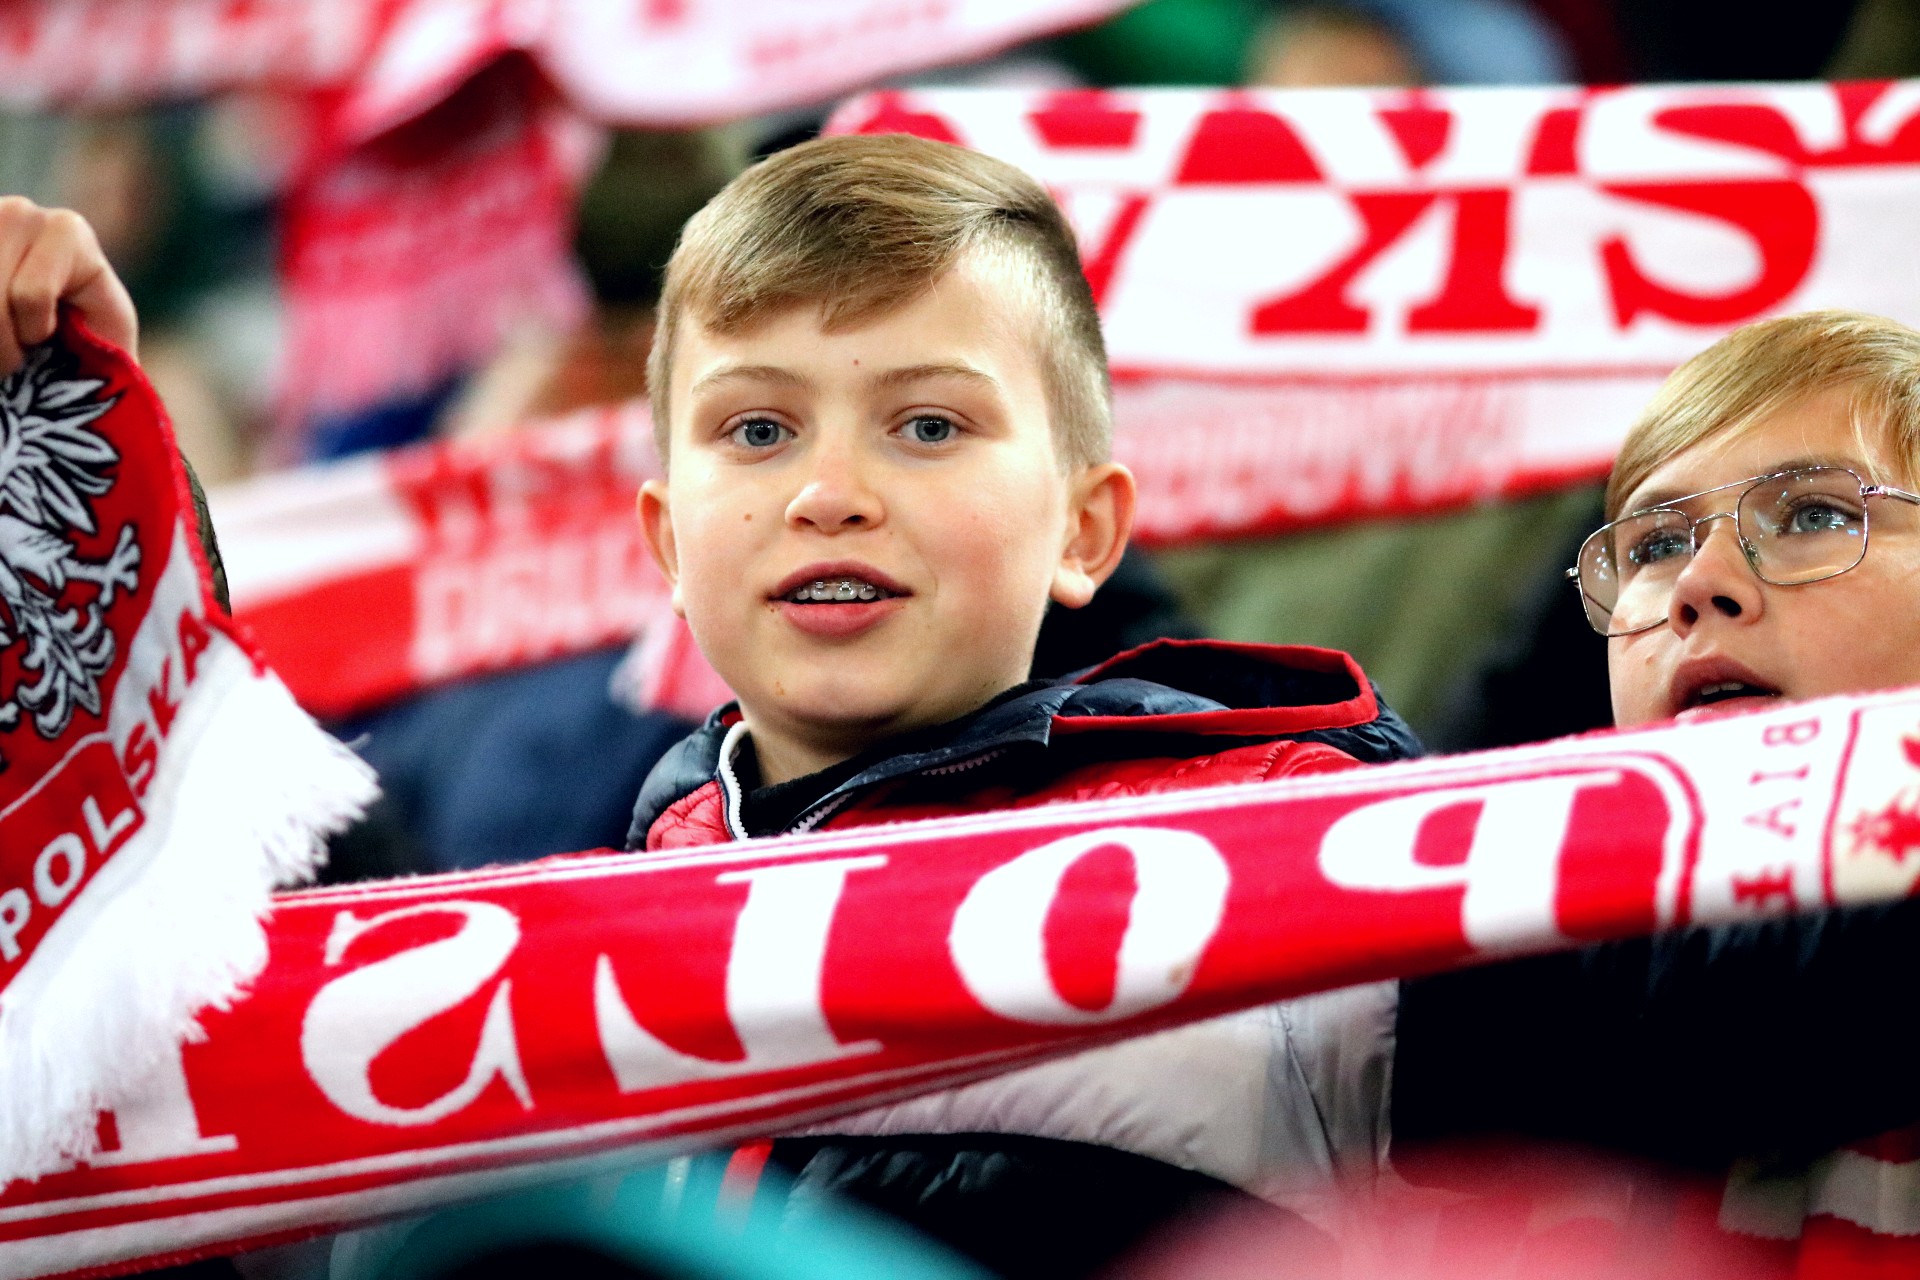 Chłopiec na trybunie stadionu trzyma rozpostarty biało-czerwony szalik z napisem Polska, za nim widać inne takie szaliki.